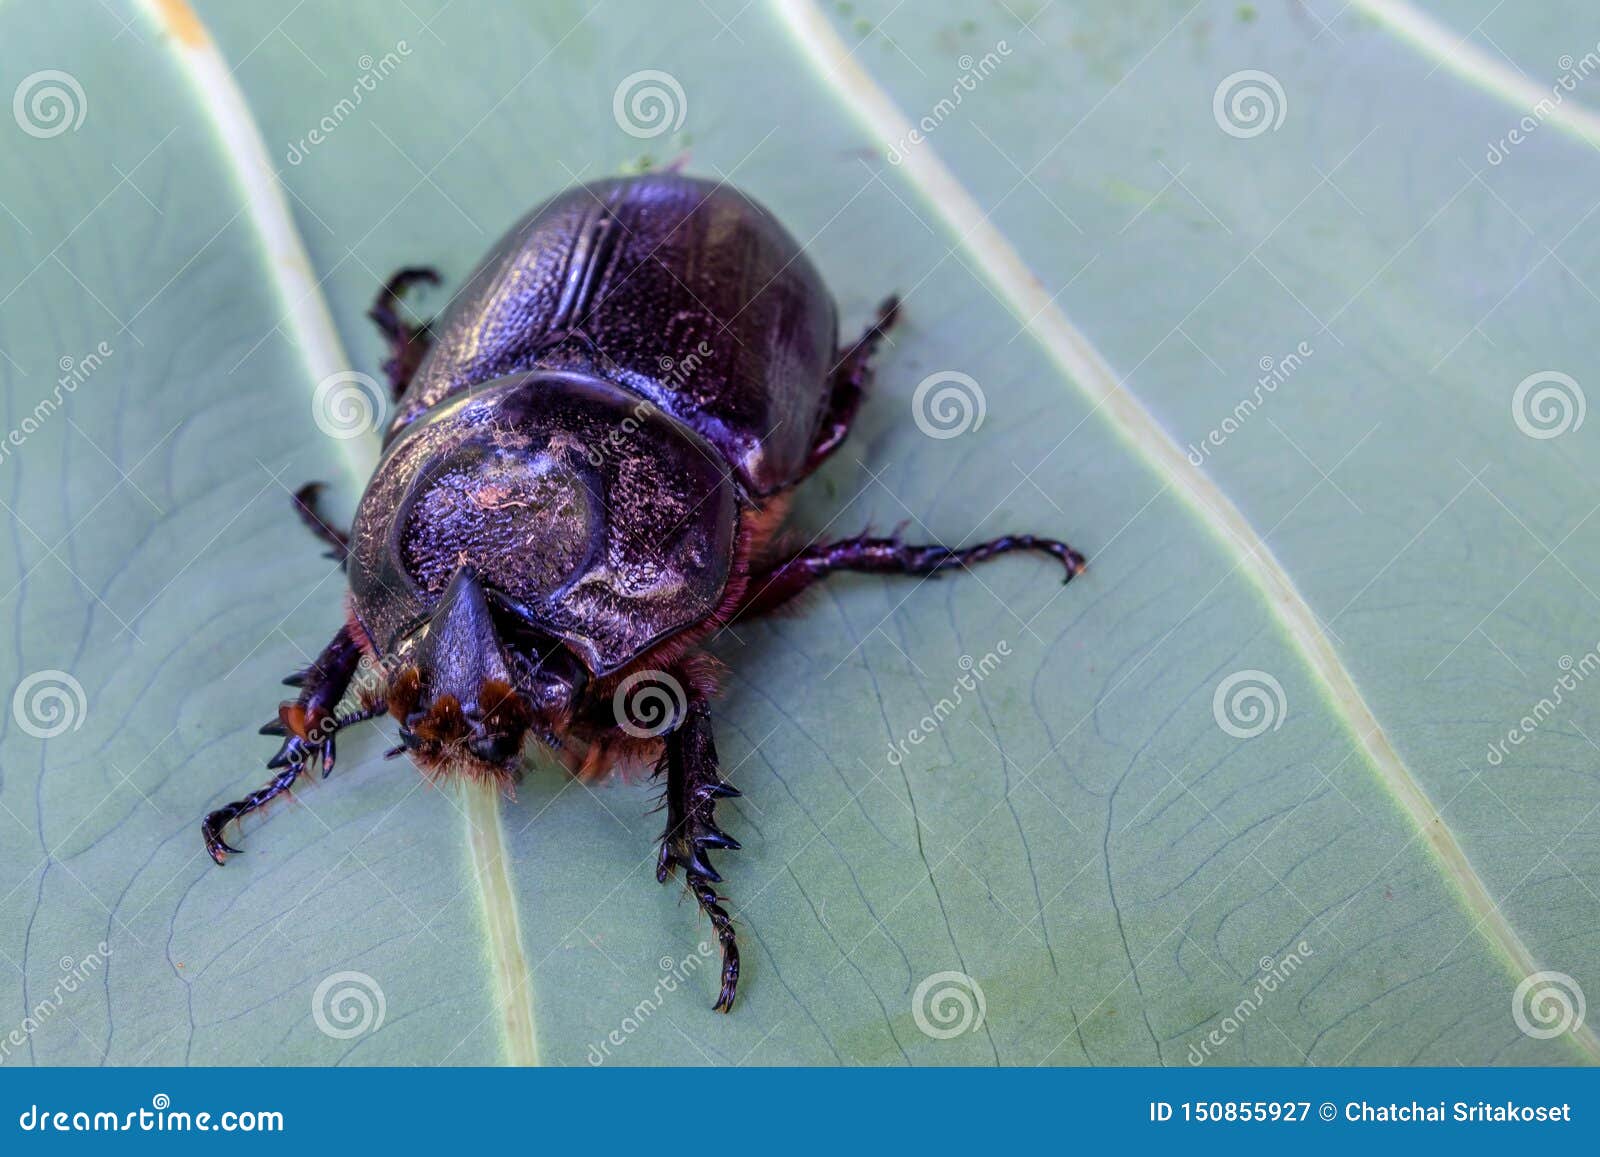 close up of coconut rhinoceros beetle on leaf